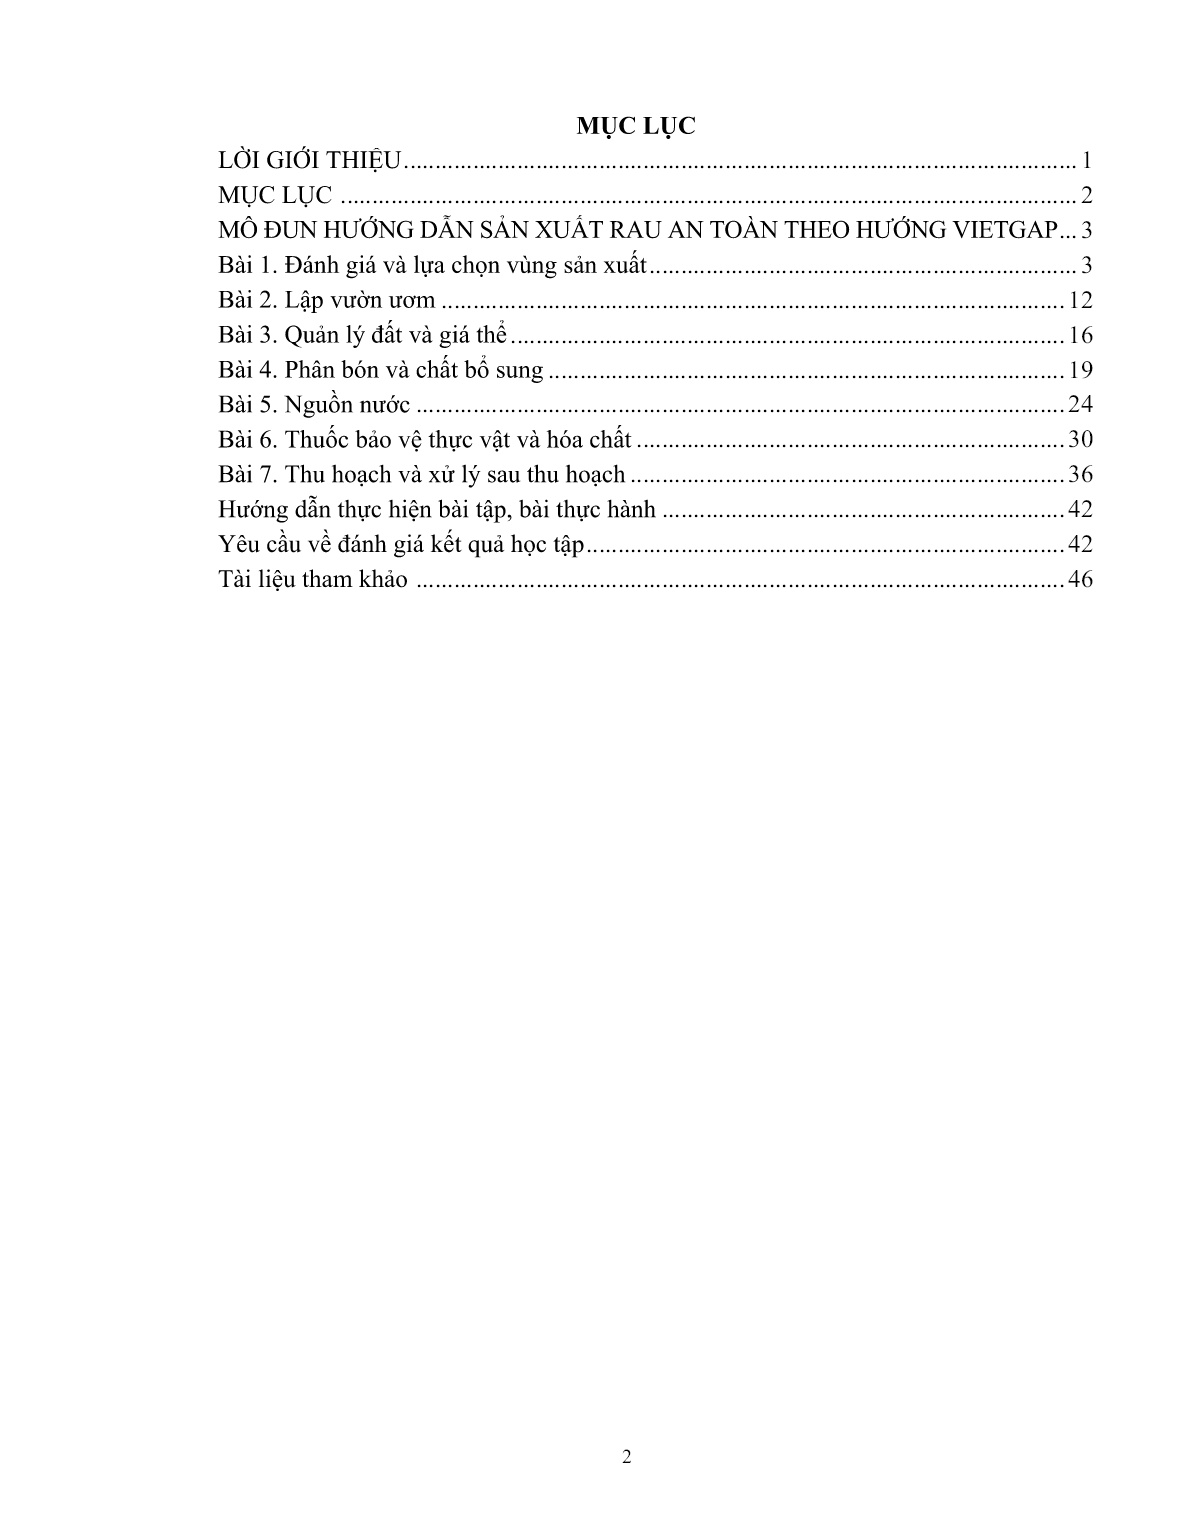 Giáo trình mô đun Hướng dẫn sản xuất rau an toàn theo hướng Vietgap (Trình độ: Đào tạo dưới 03 tháng) trang 3